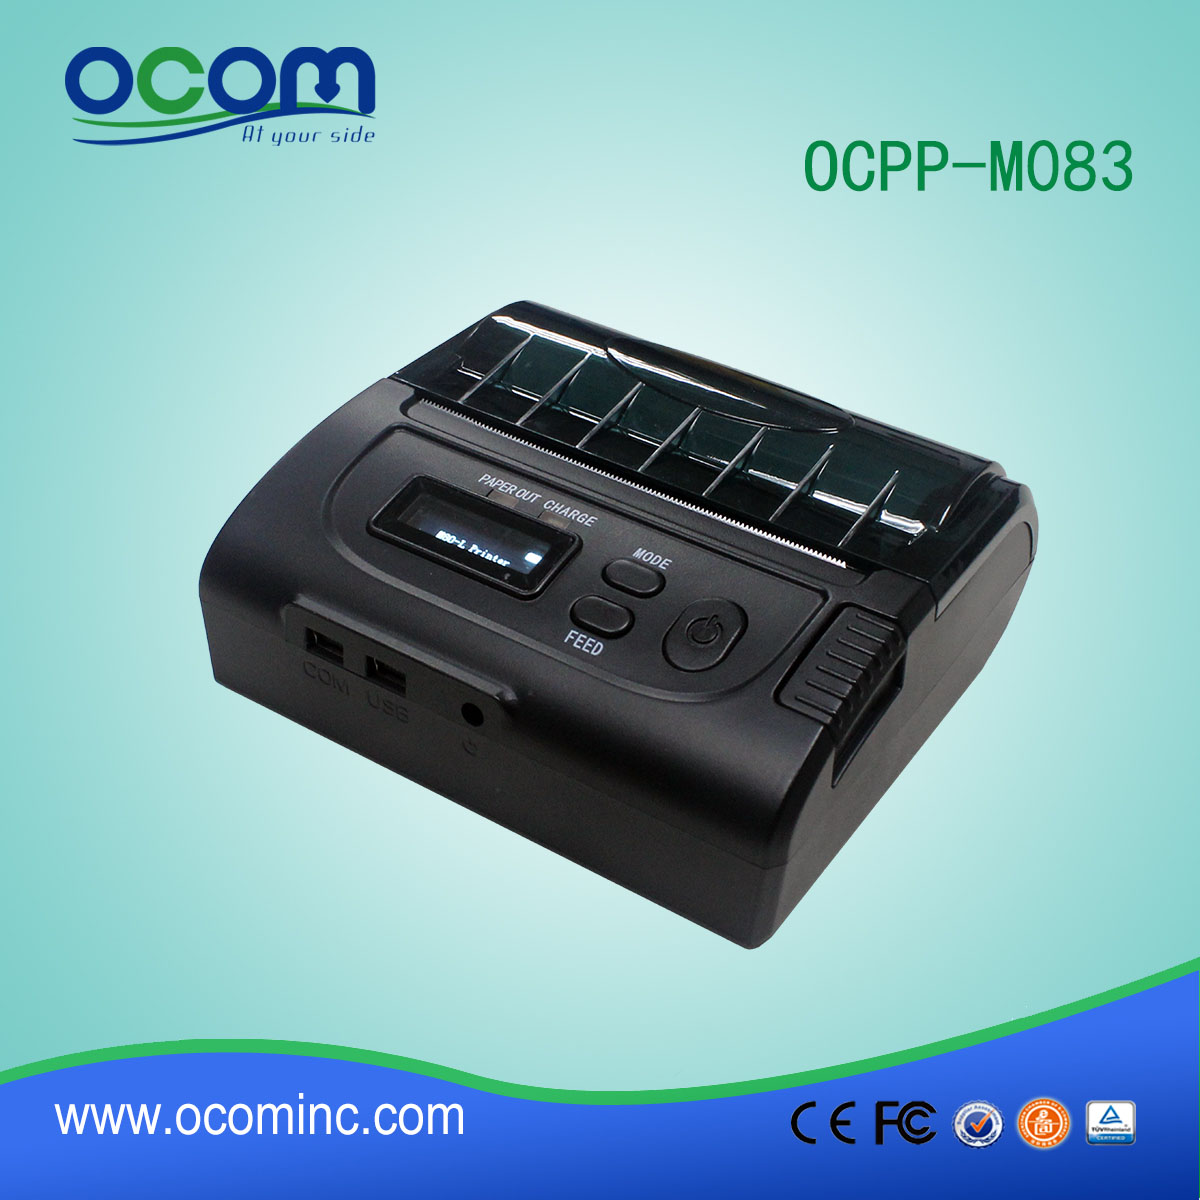 el apoyo de mano de la impresora móvil del bluetooth OCPP-M083 de 80 mm IOS